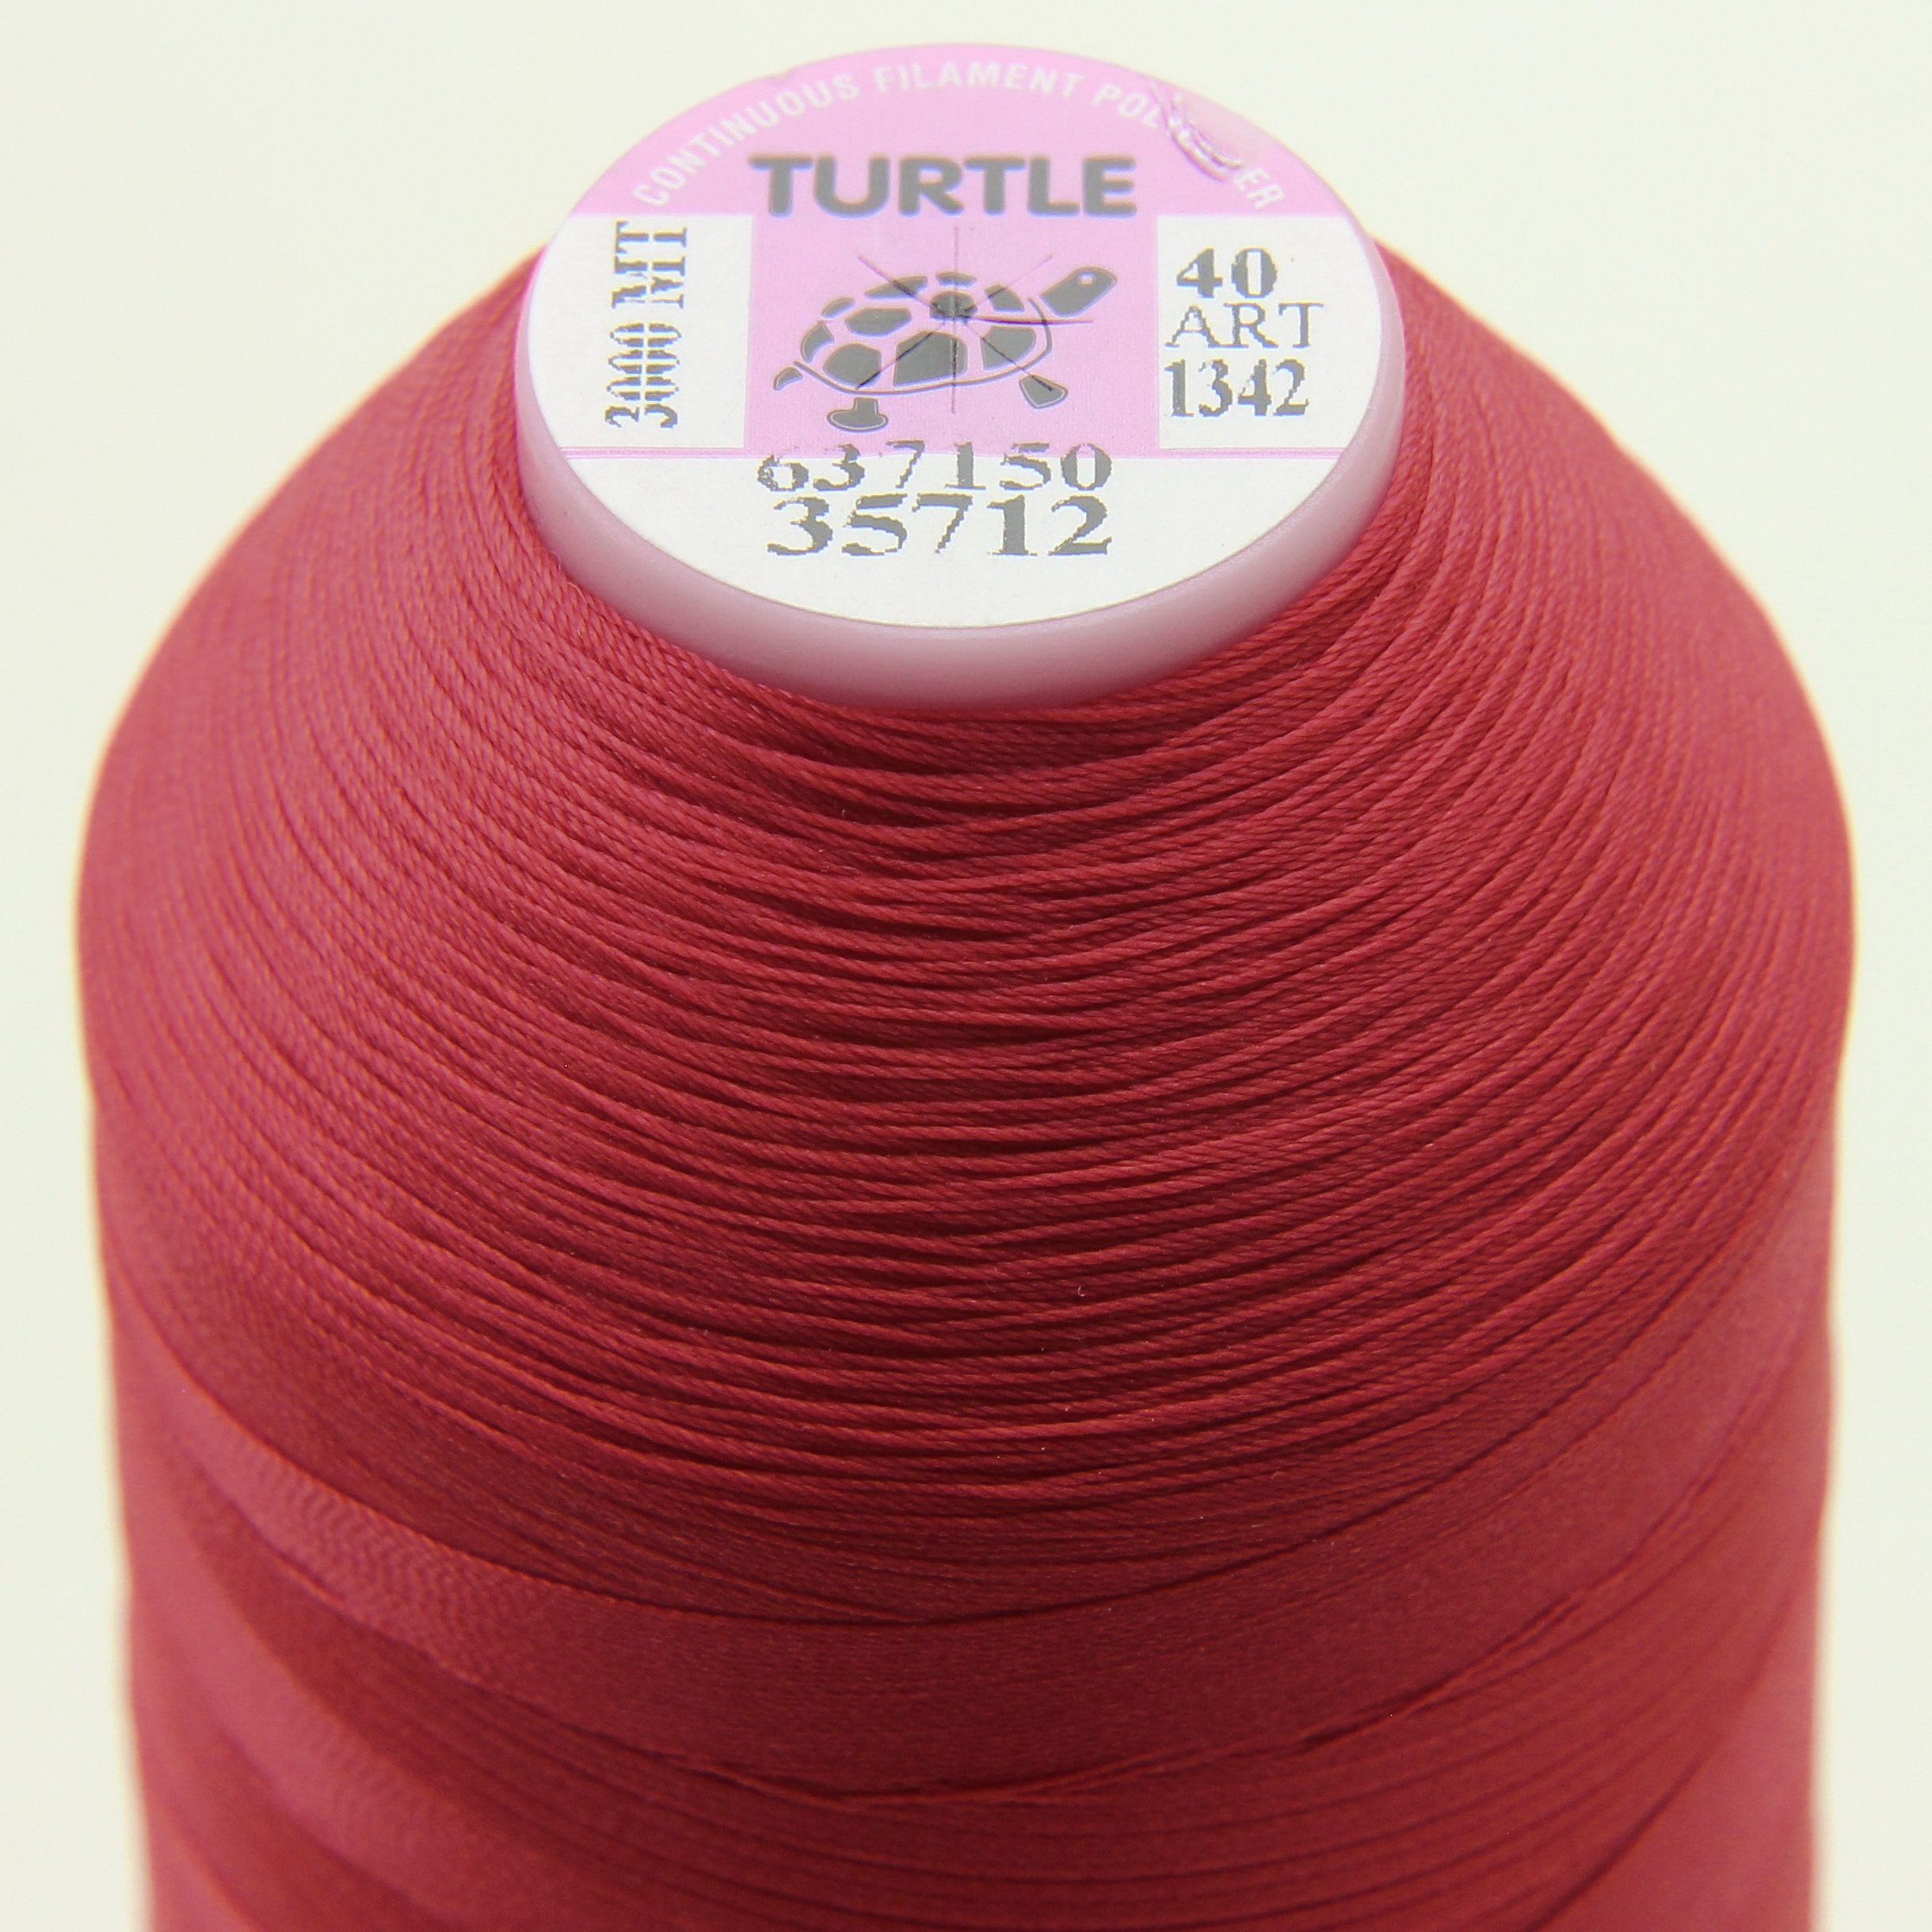 Нить TURTLE (Турция) №40 цвет 35712 для оверлока, красный, длина 3000м. детальная фотка